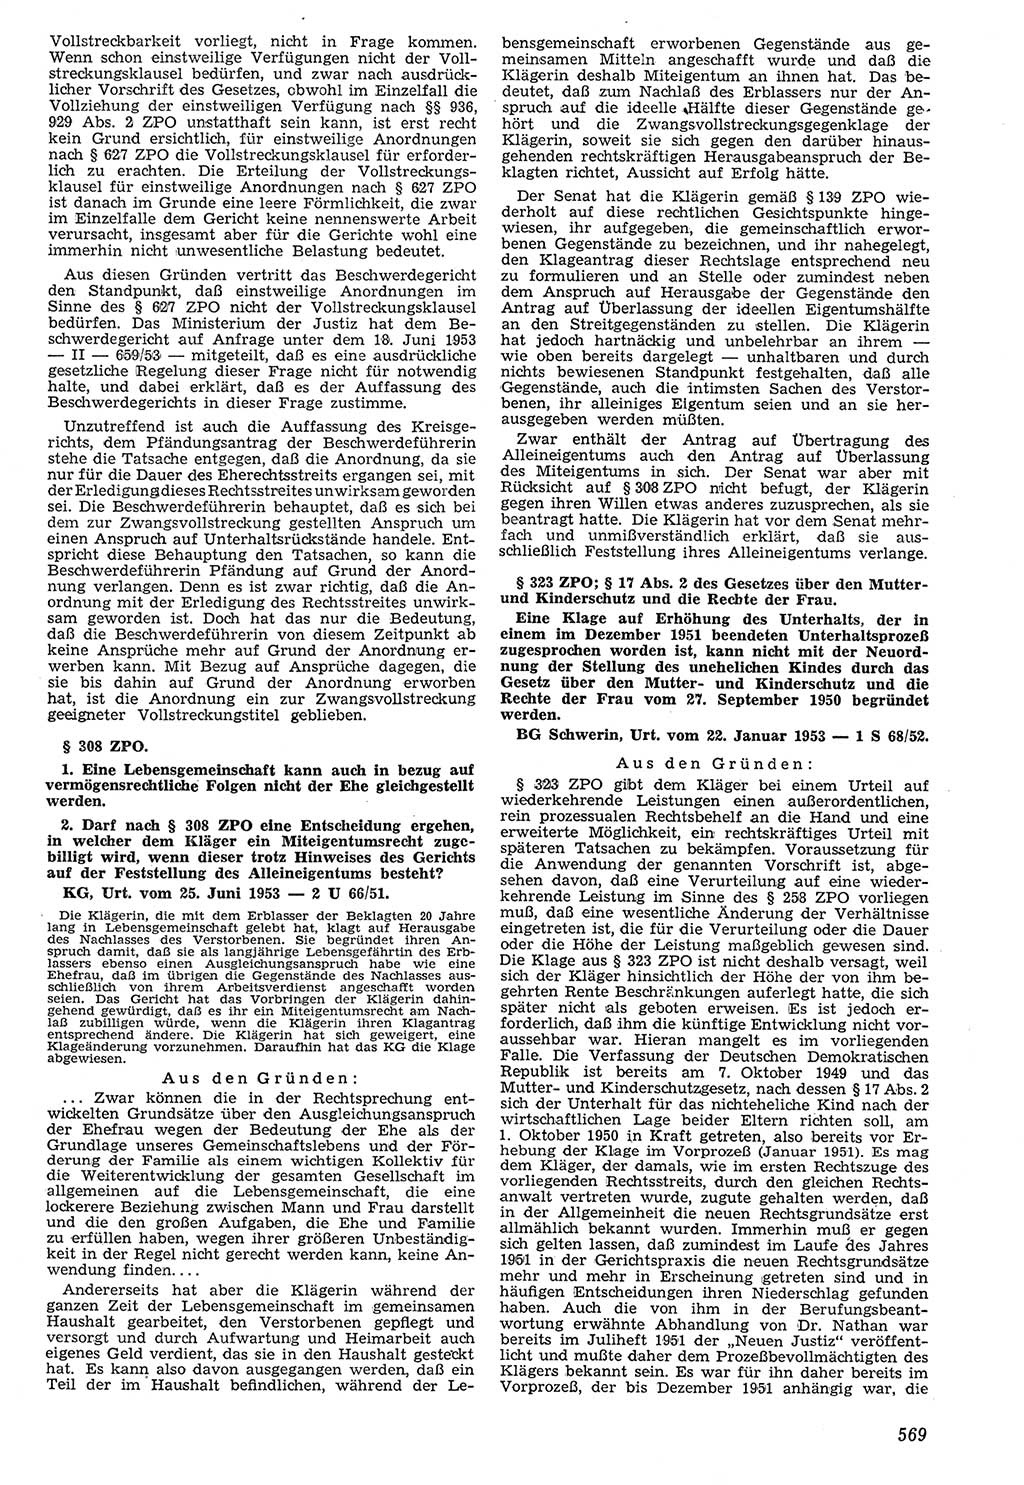 Neue Justiz (NJ), Zeitschrift für Recht und Rechtswissenschaft [Deutsche Demokratische Republik (DDR)], 7. Jahrgang 1953, Seite 569 (NJ DDR 1953, S. 569)